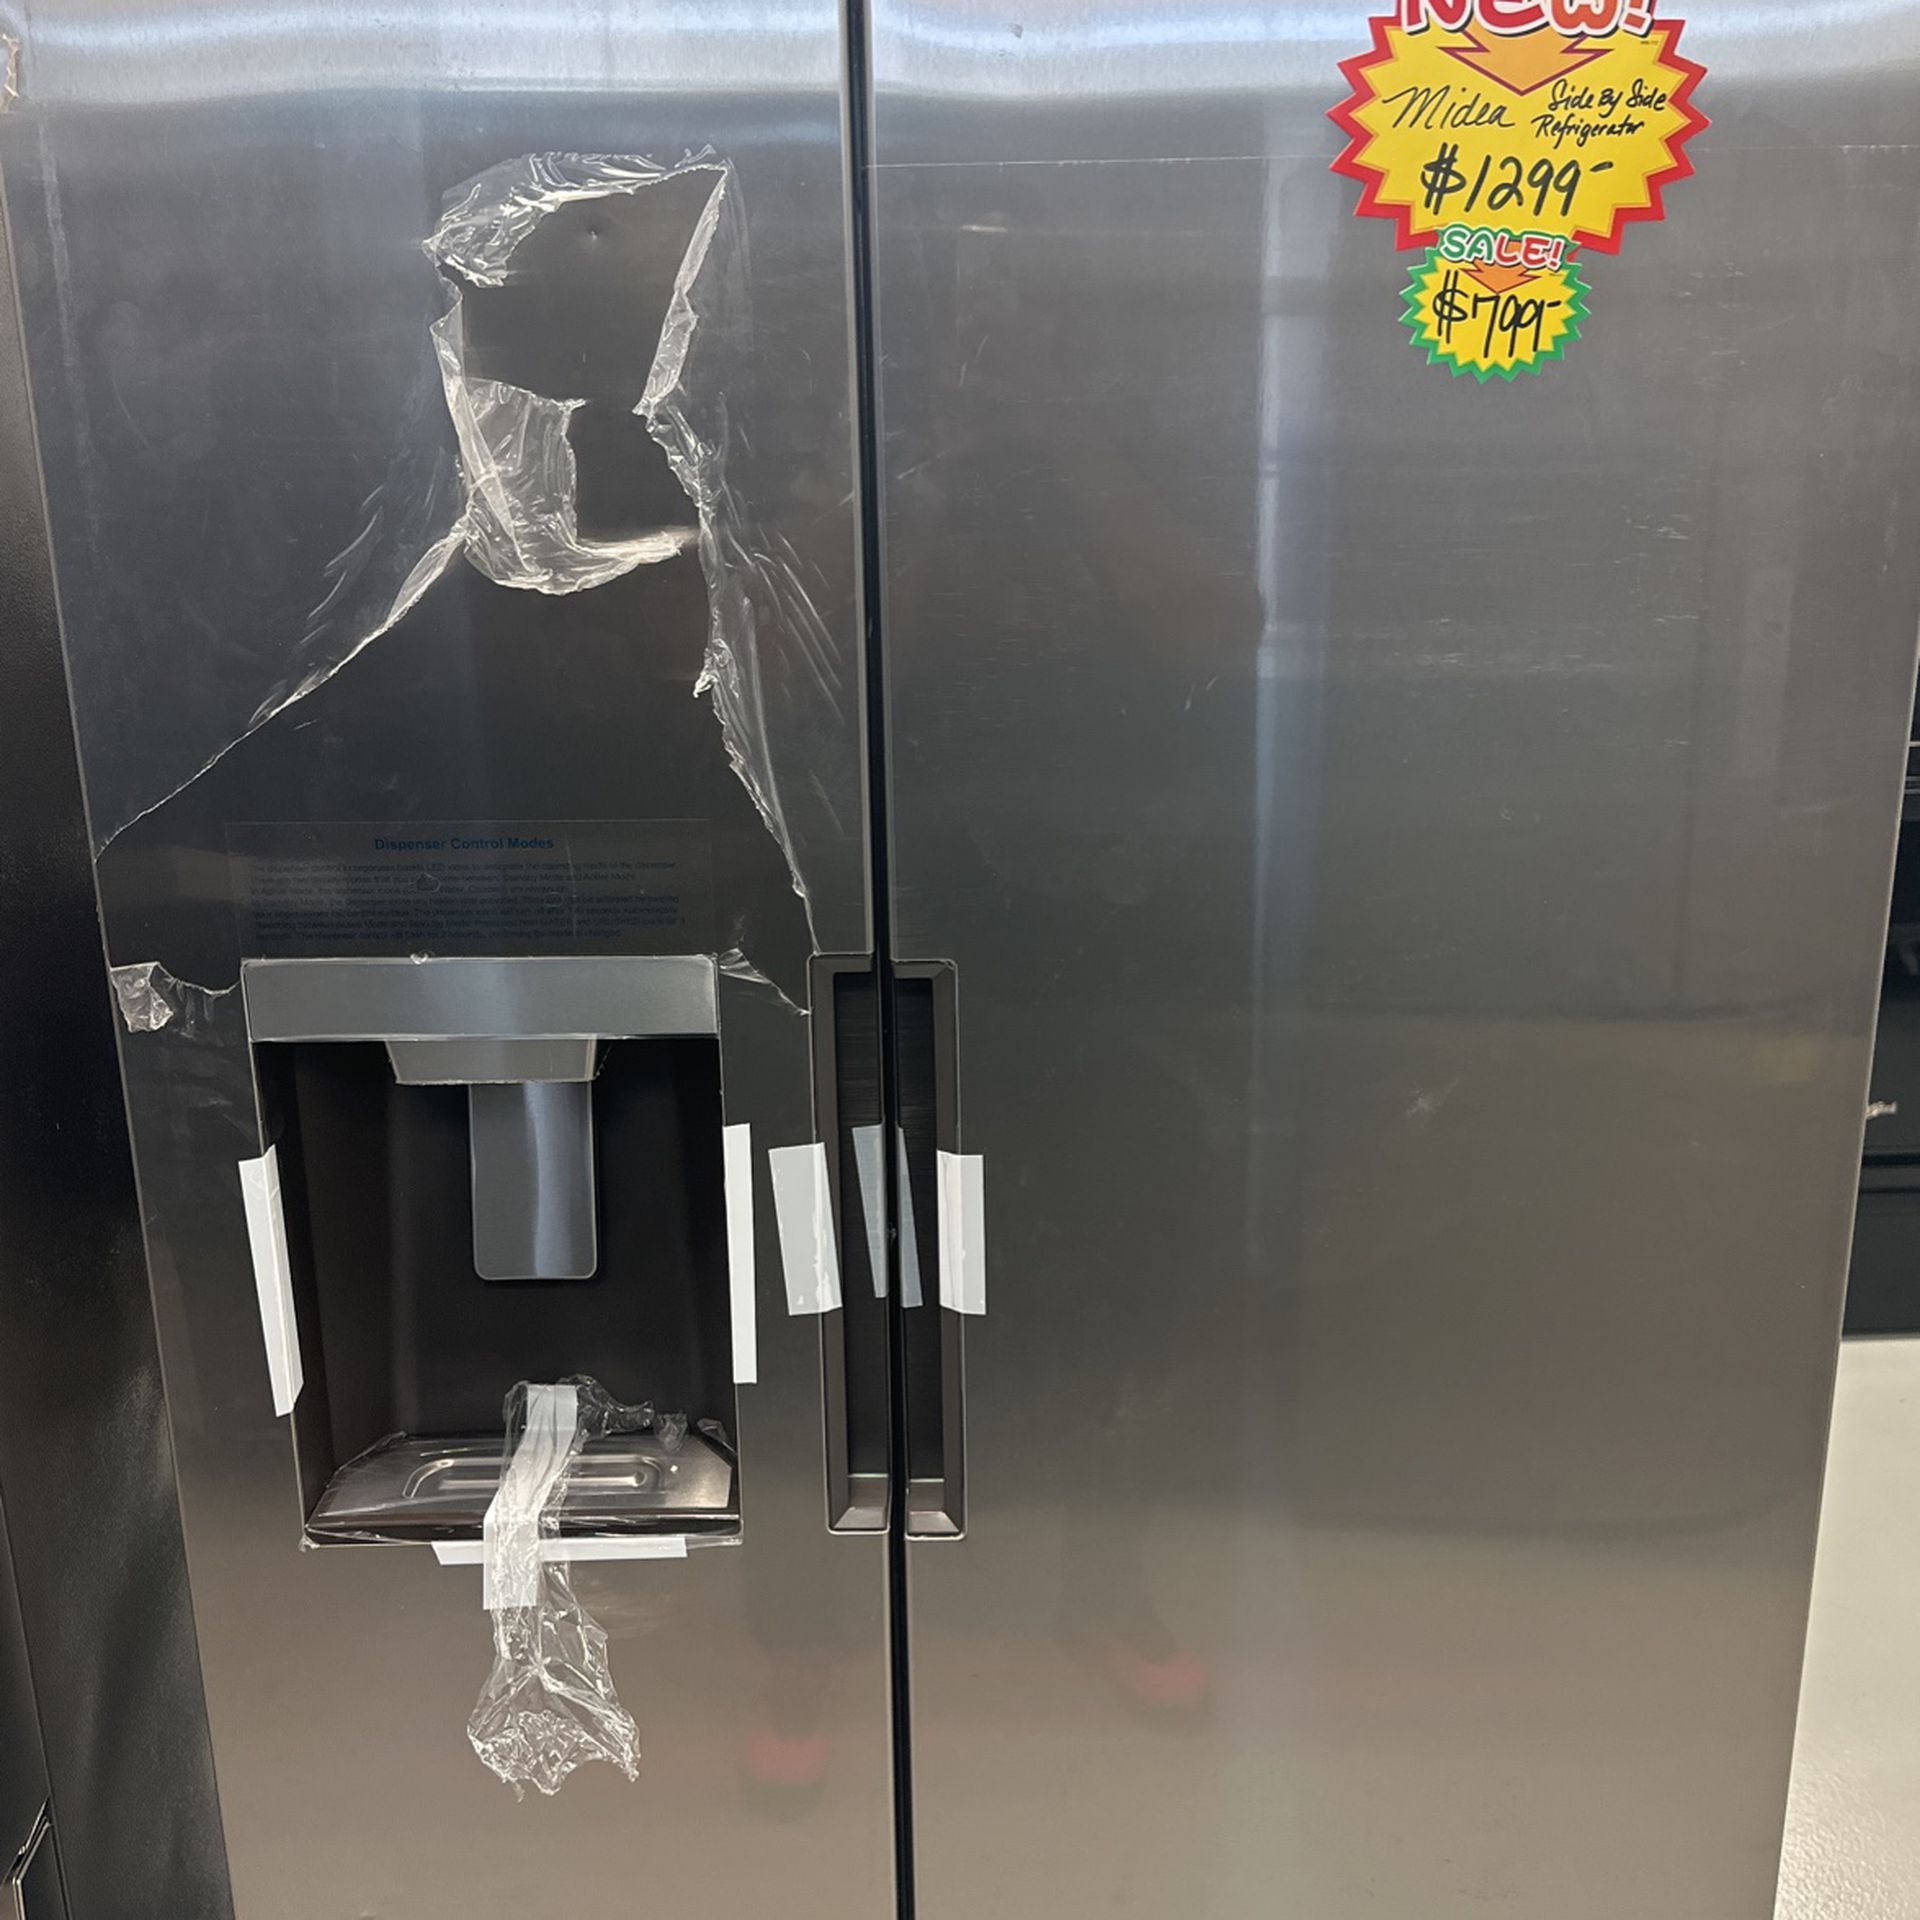 Brand New Midea Refrigerator Still In Plastic 